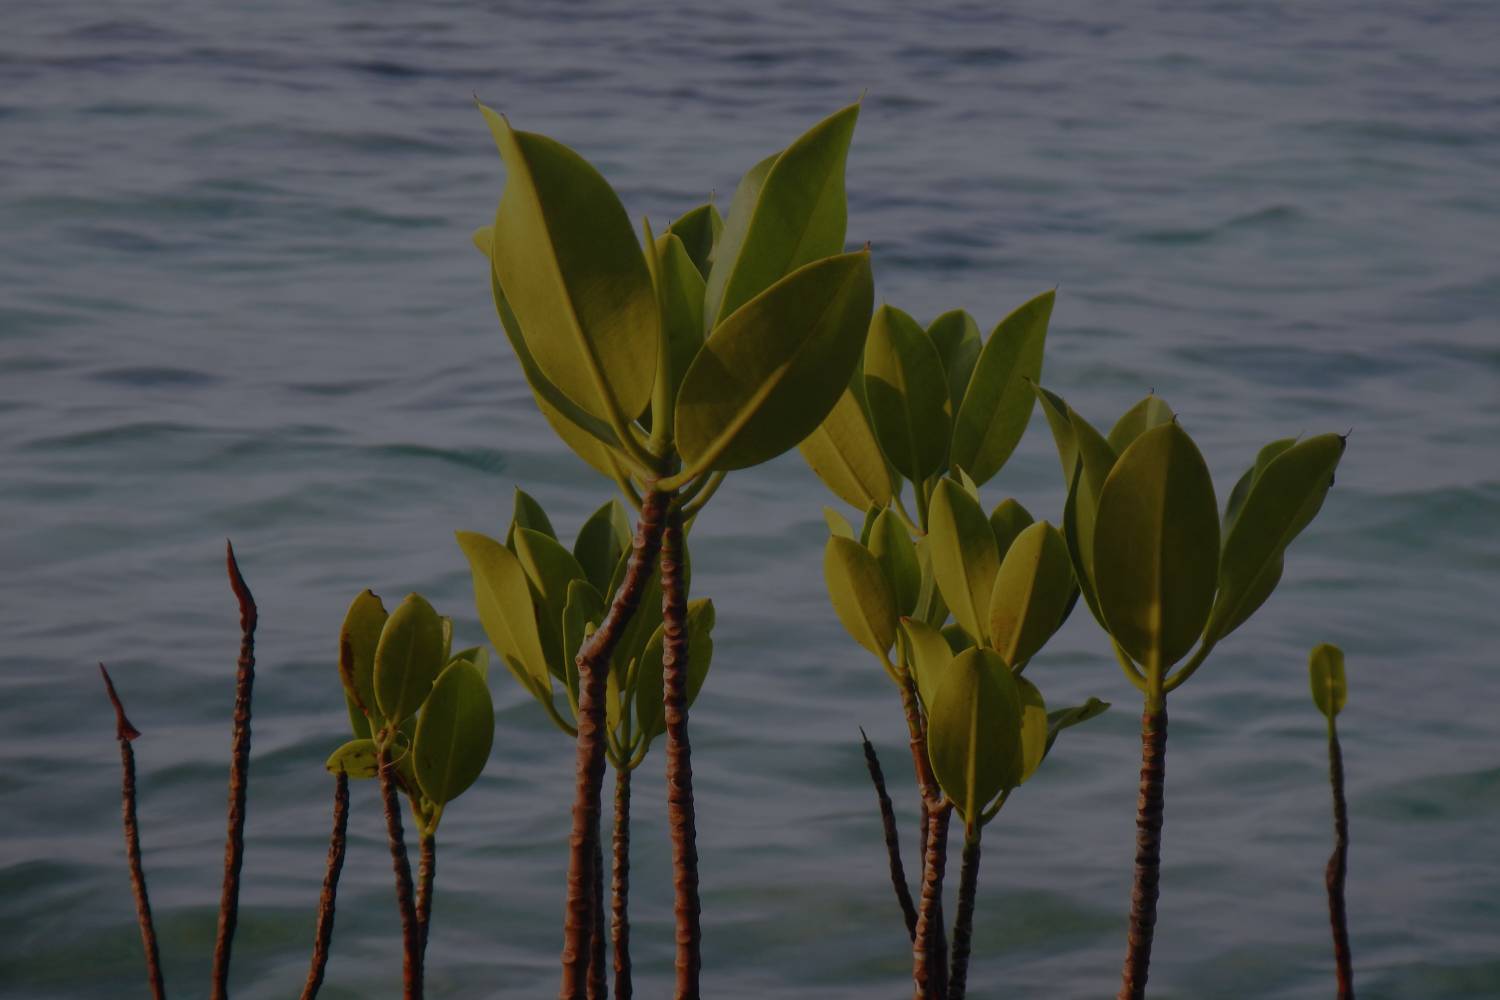 Mangroves seedlings growing in river in Afrika